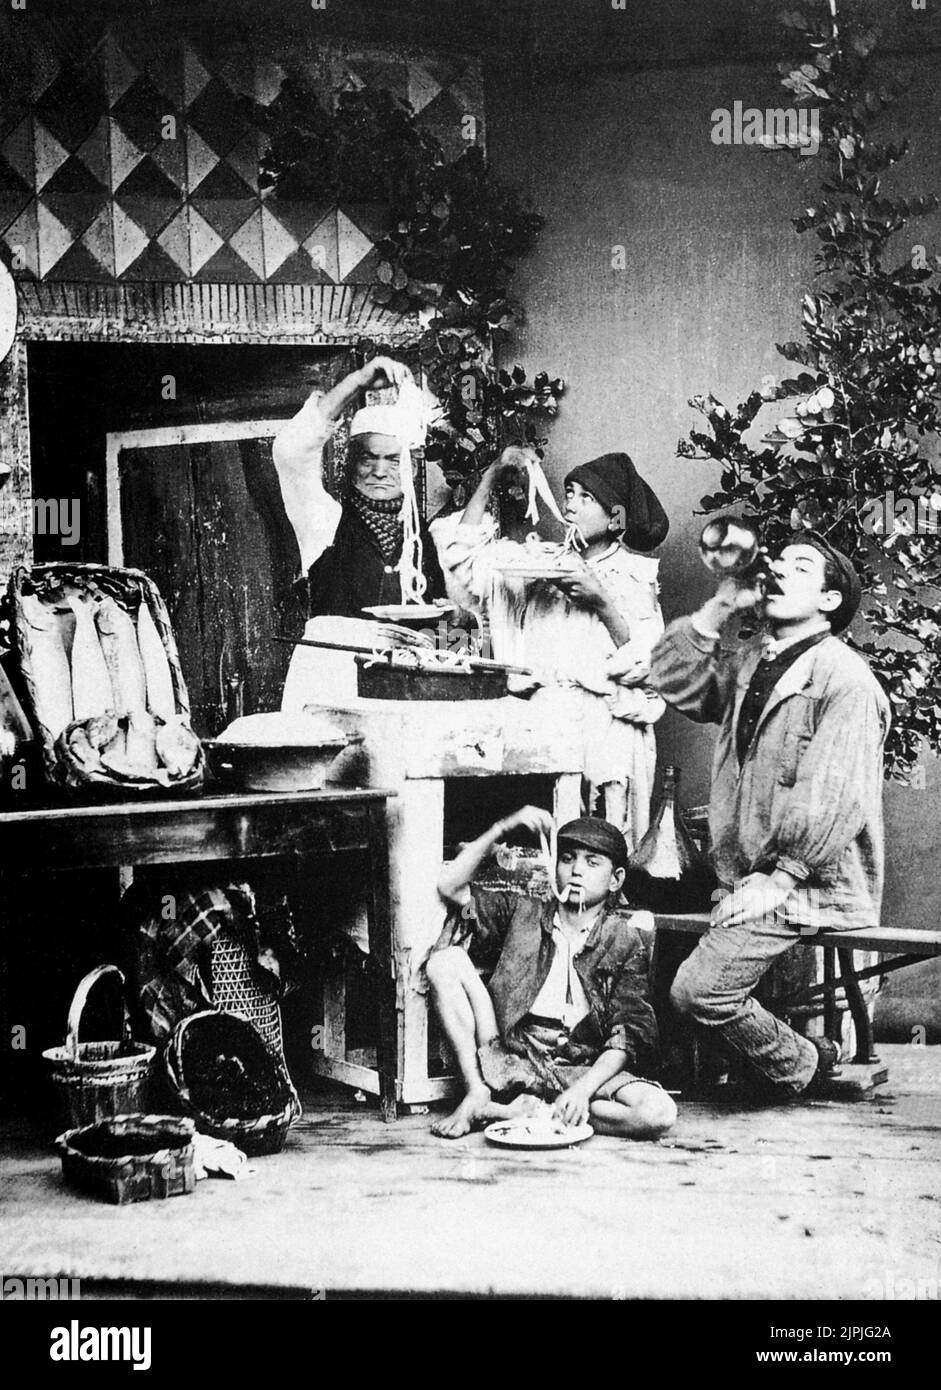 1870 aprox. , Nápoles , Italia : Una fotografía popular de GIORGIO SOMMER , Los comedores de macarrones ( MANGIATORI DI MACCHERONI ) - PASTA - NAPOLI - FOLCLORK - SCENA POLARE - FOTO STORICA - HISTORIA - mercato ---- Archivio GBB Foto de stock